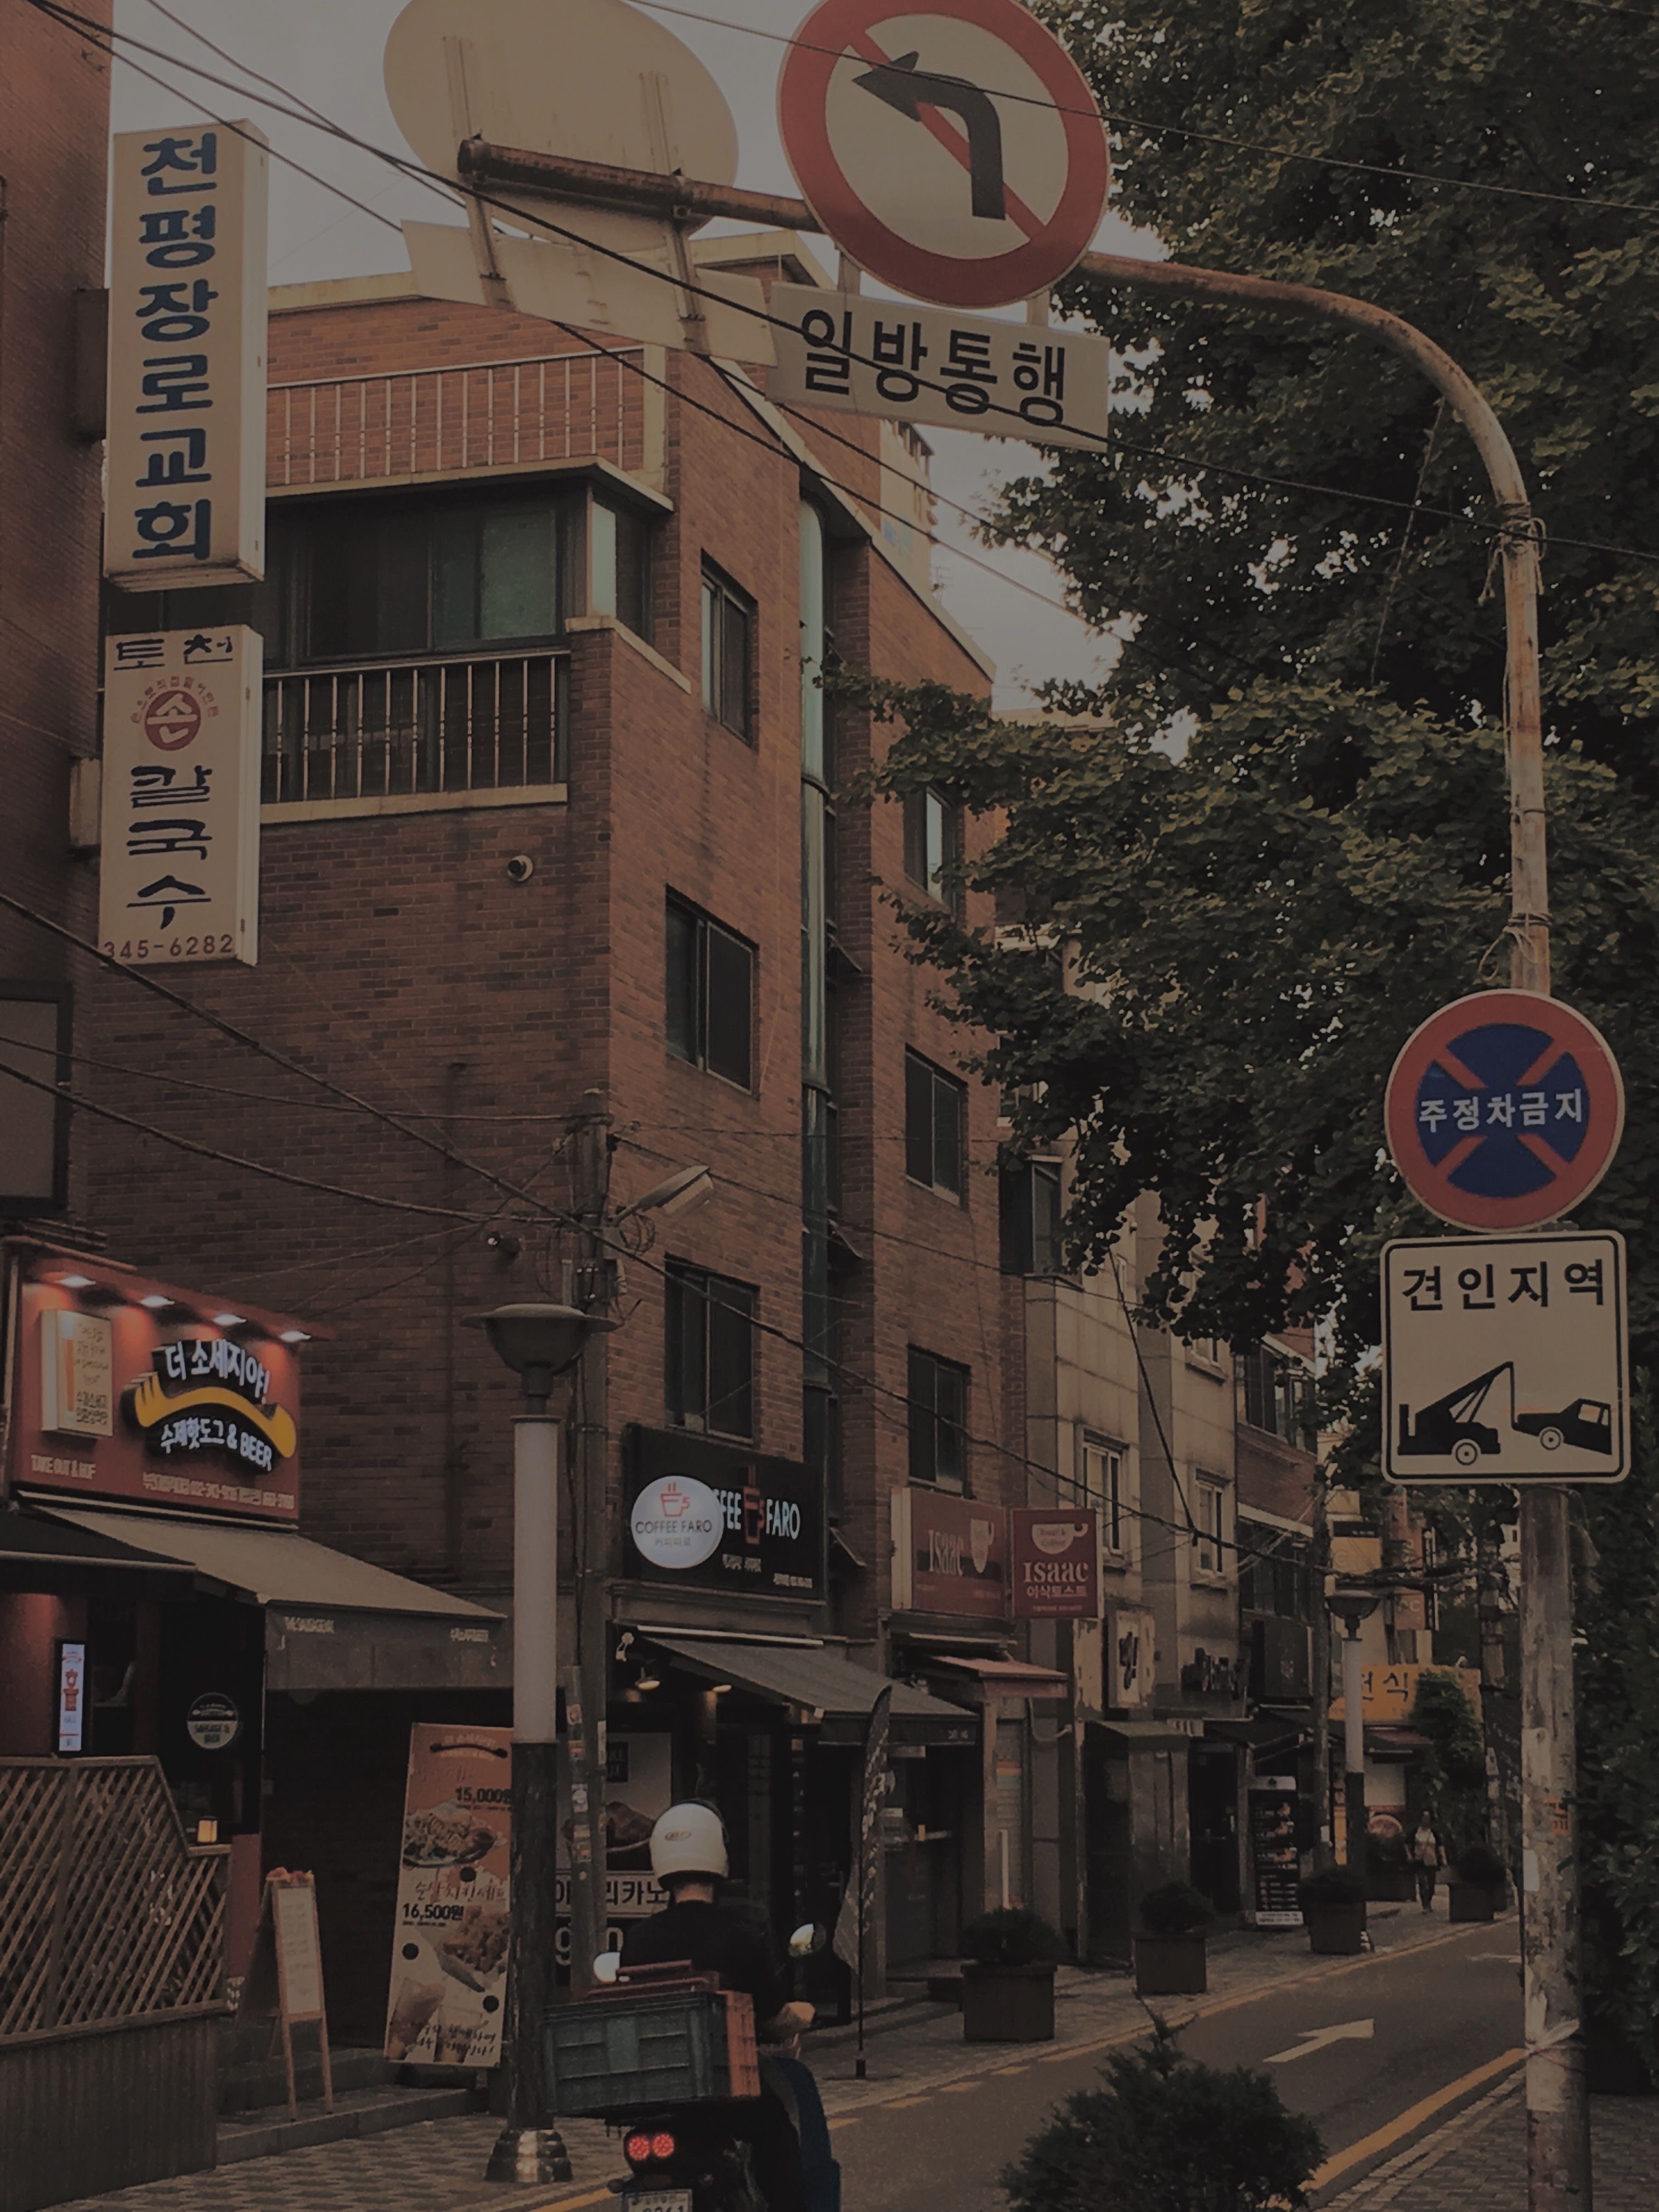 20 Top Wallpaper Aesthetic Pemandangan Korea You Can Use It For Free